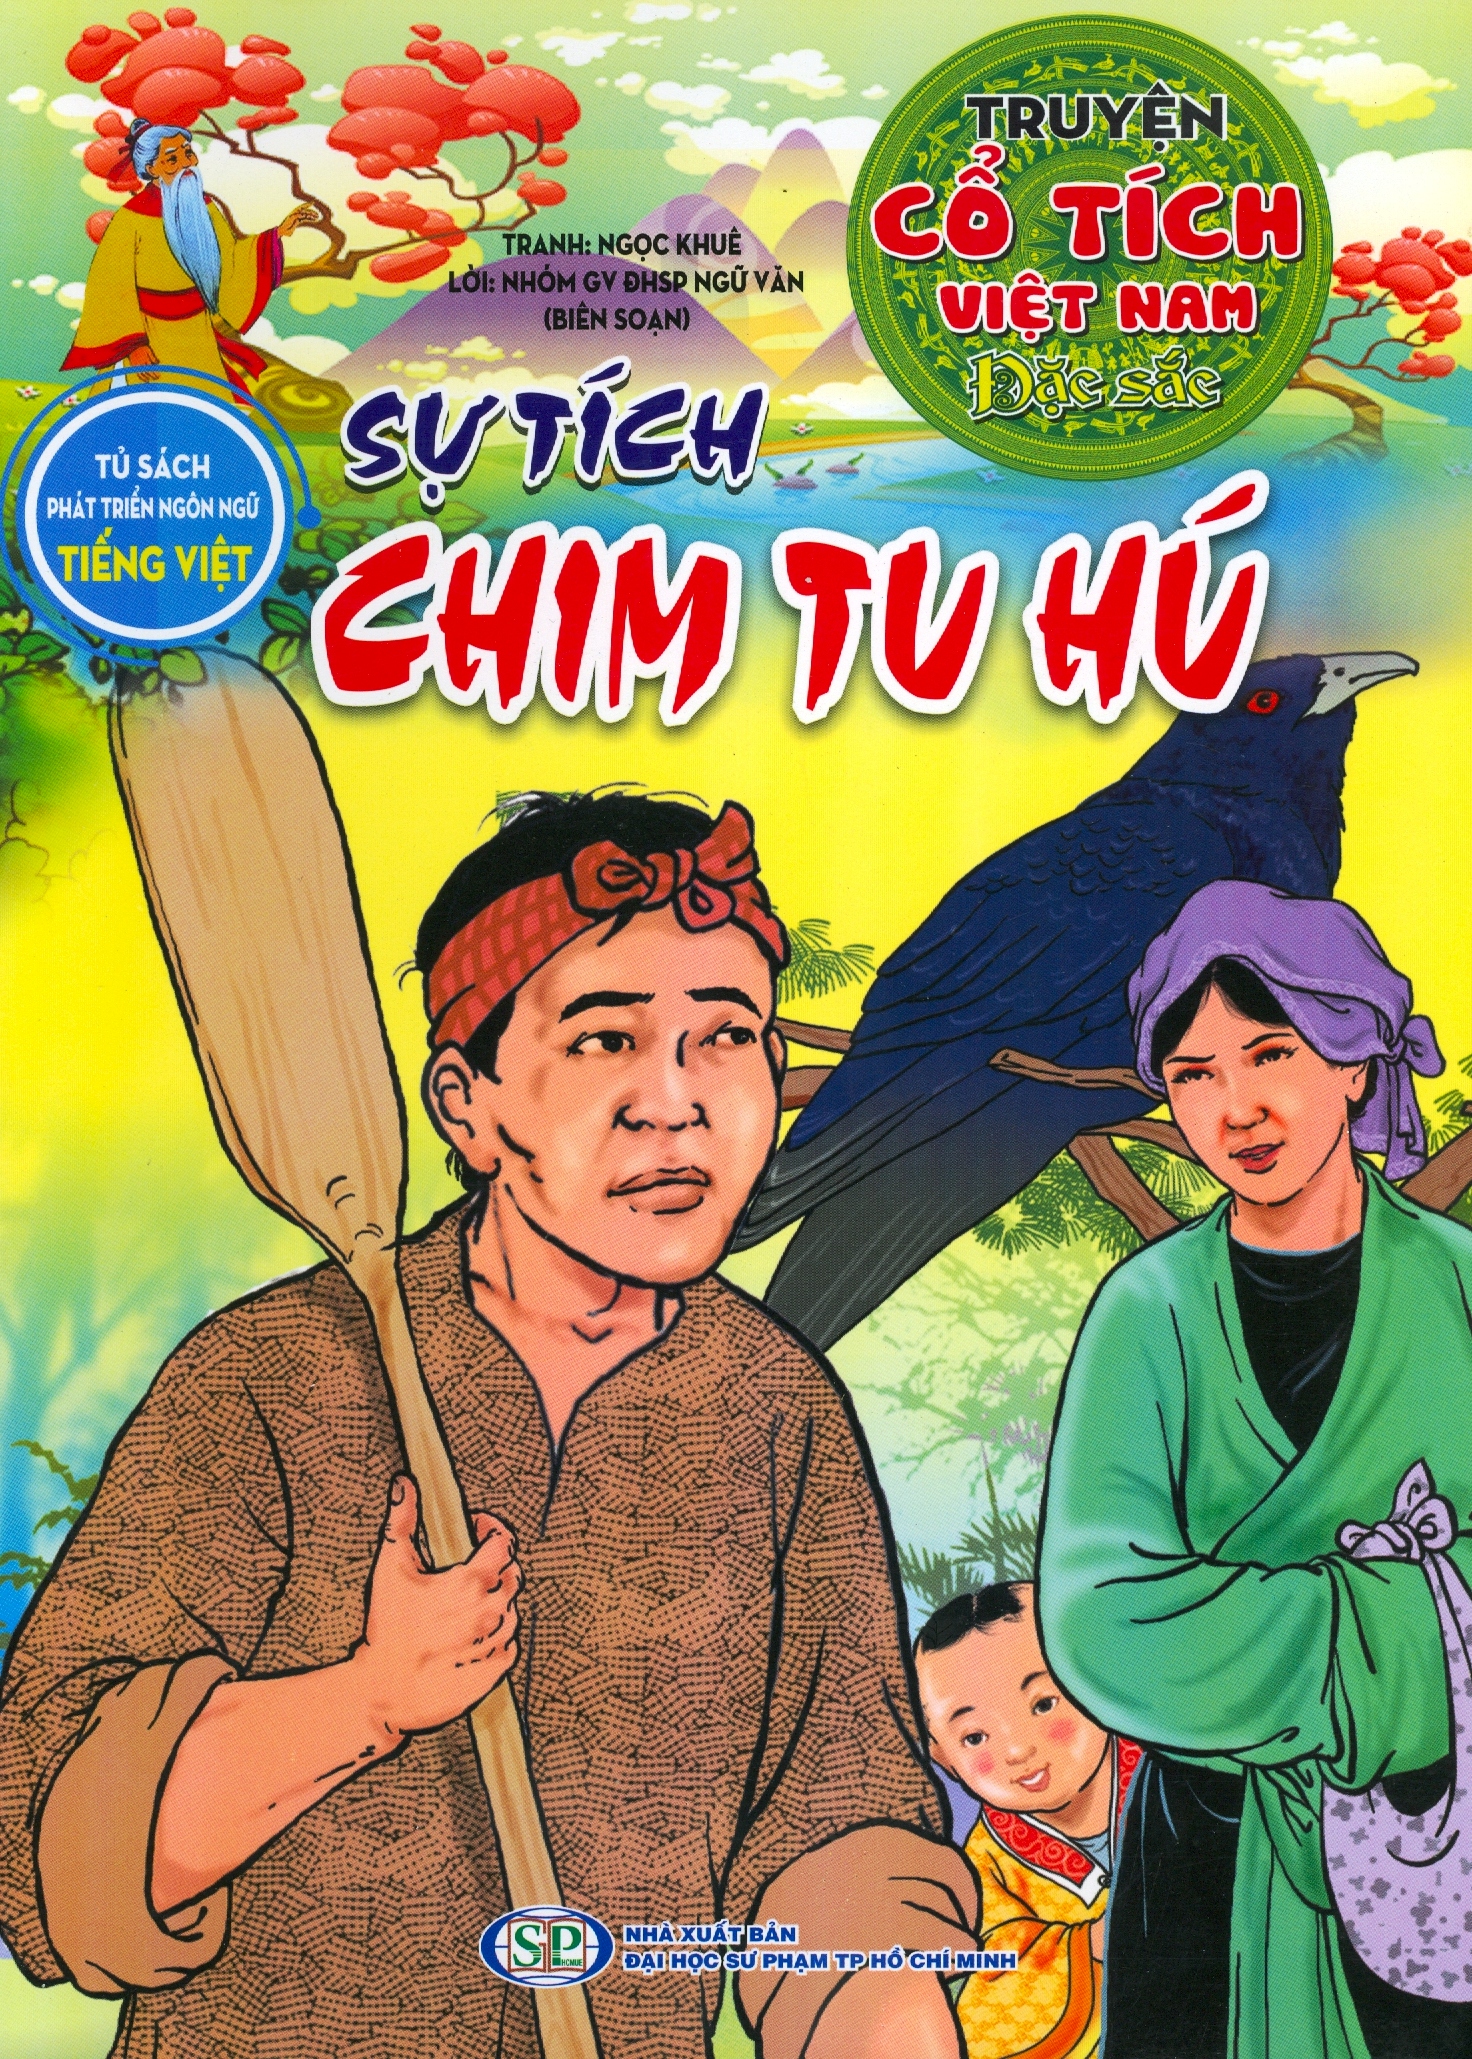 Truyện Cổ Tích Việt Nam Đặc Sắc – Sự Tích Chim Tu Hú